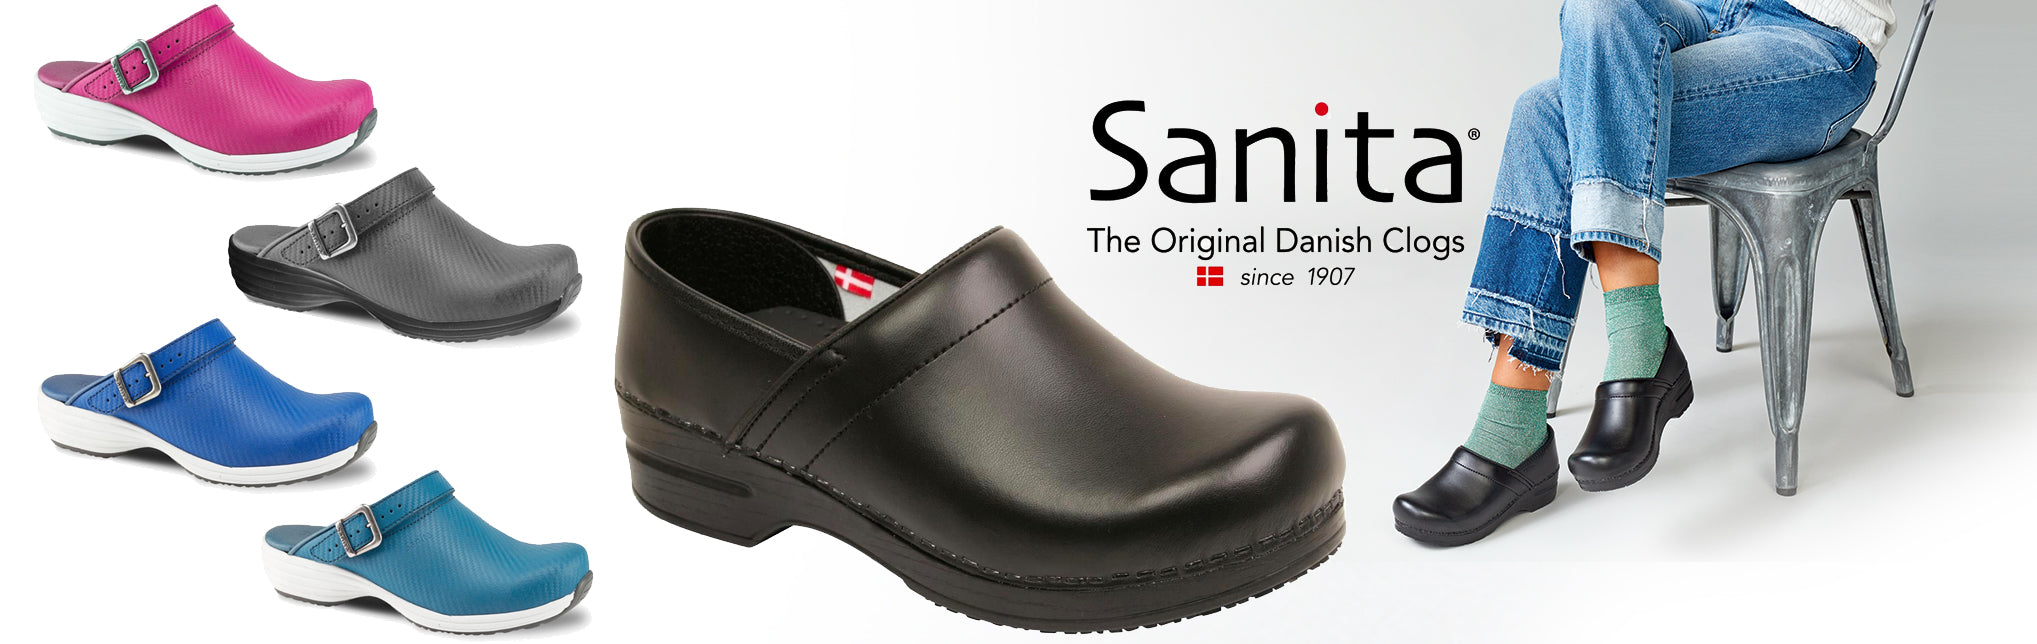 sanita shoes